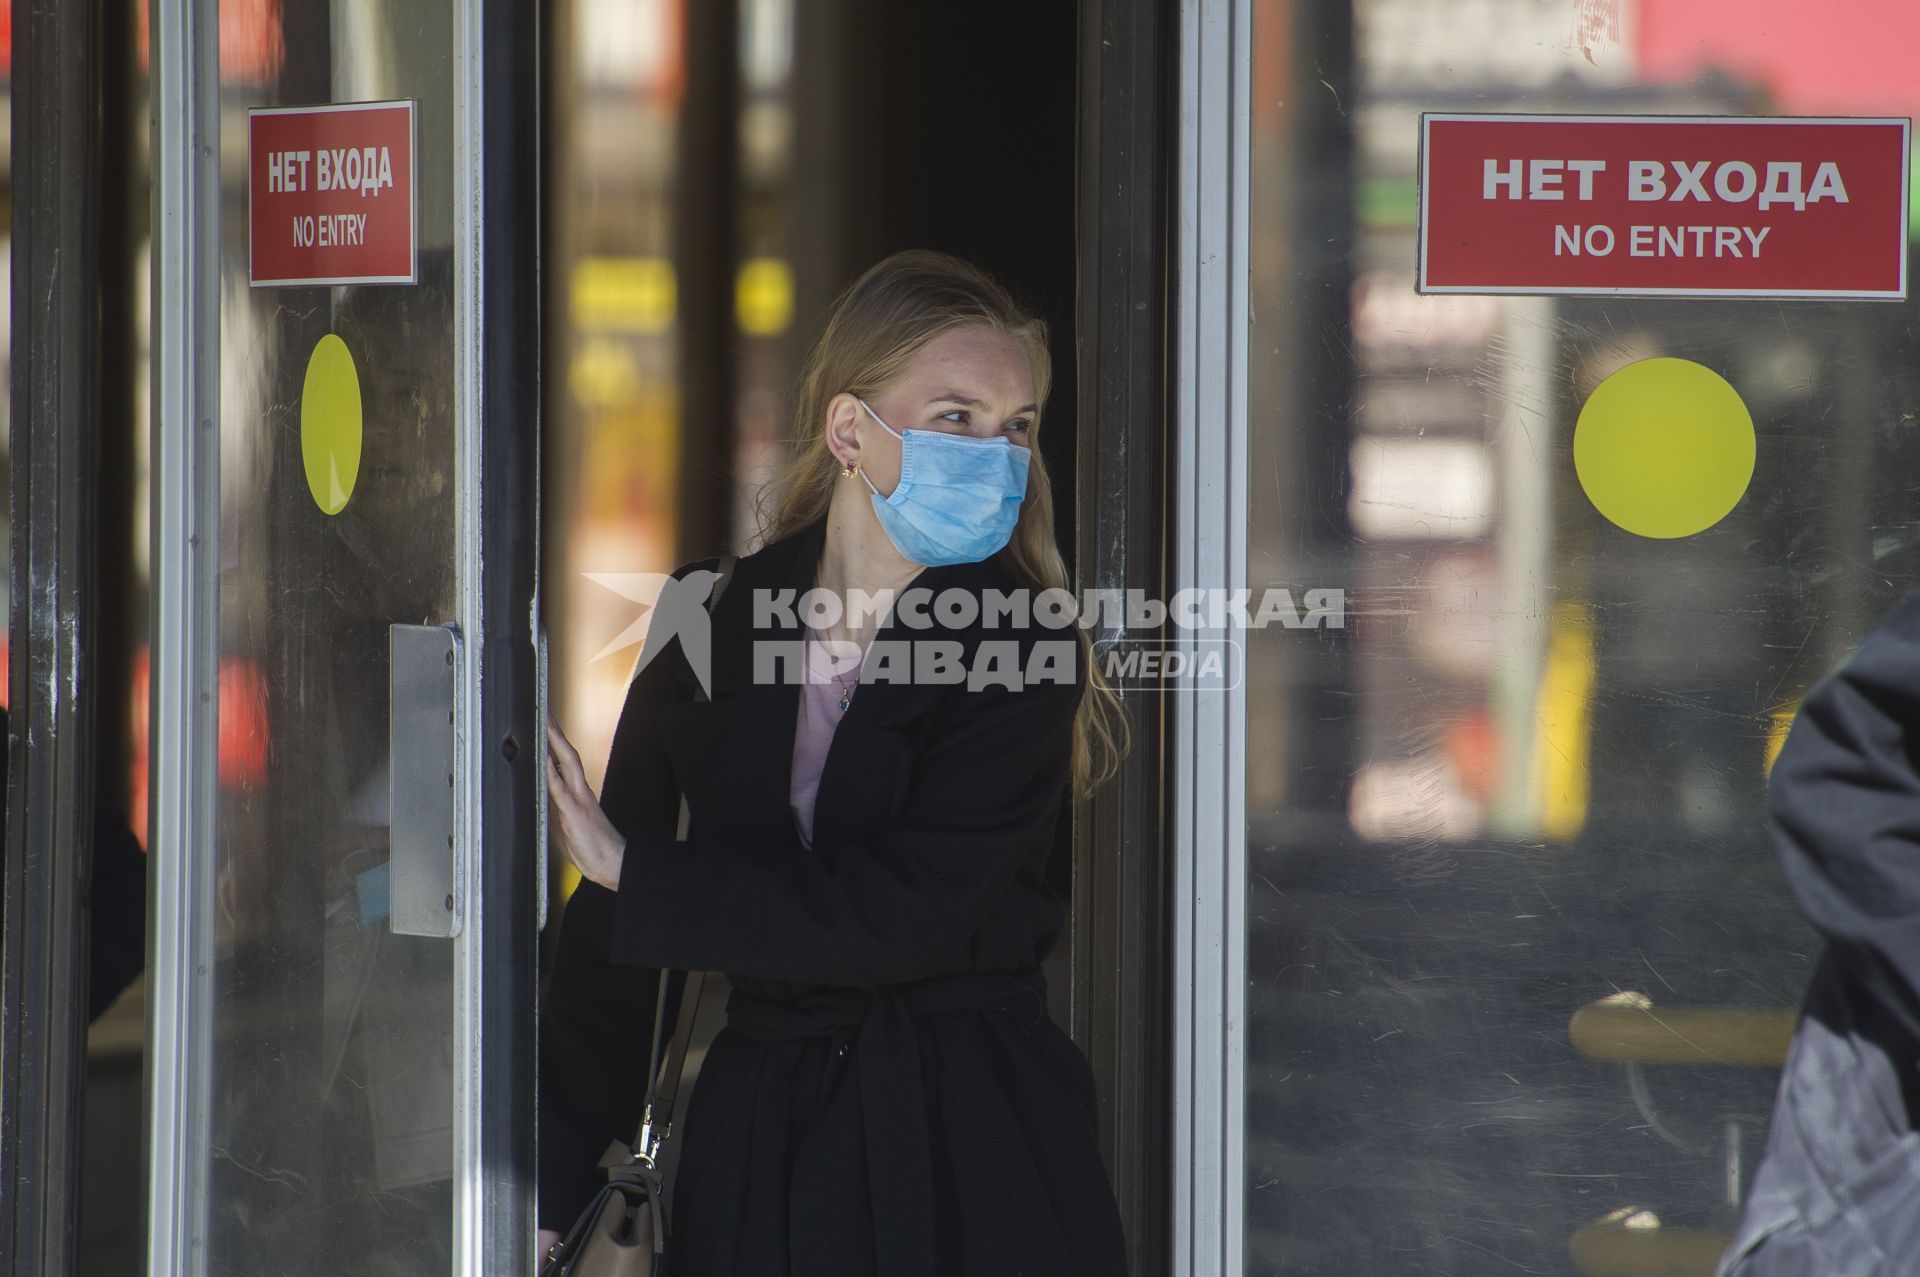 Екатеринбург. Горожане во время режима самоизоляции введеного для нераспространения новой коронавирусной инфекции COVID-19